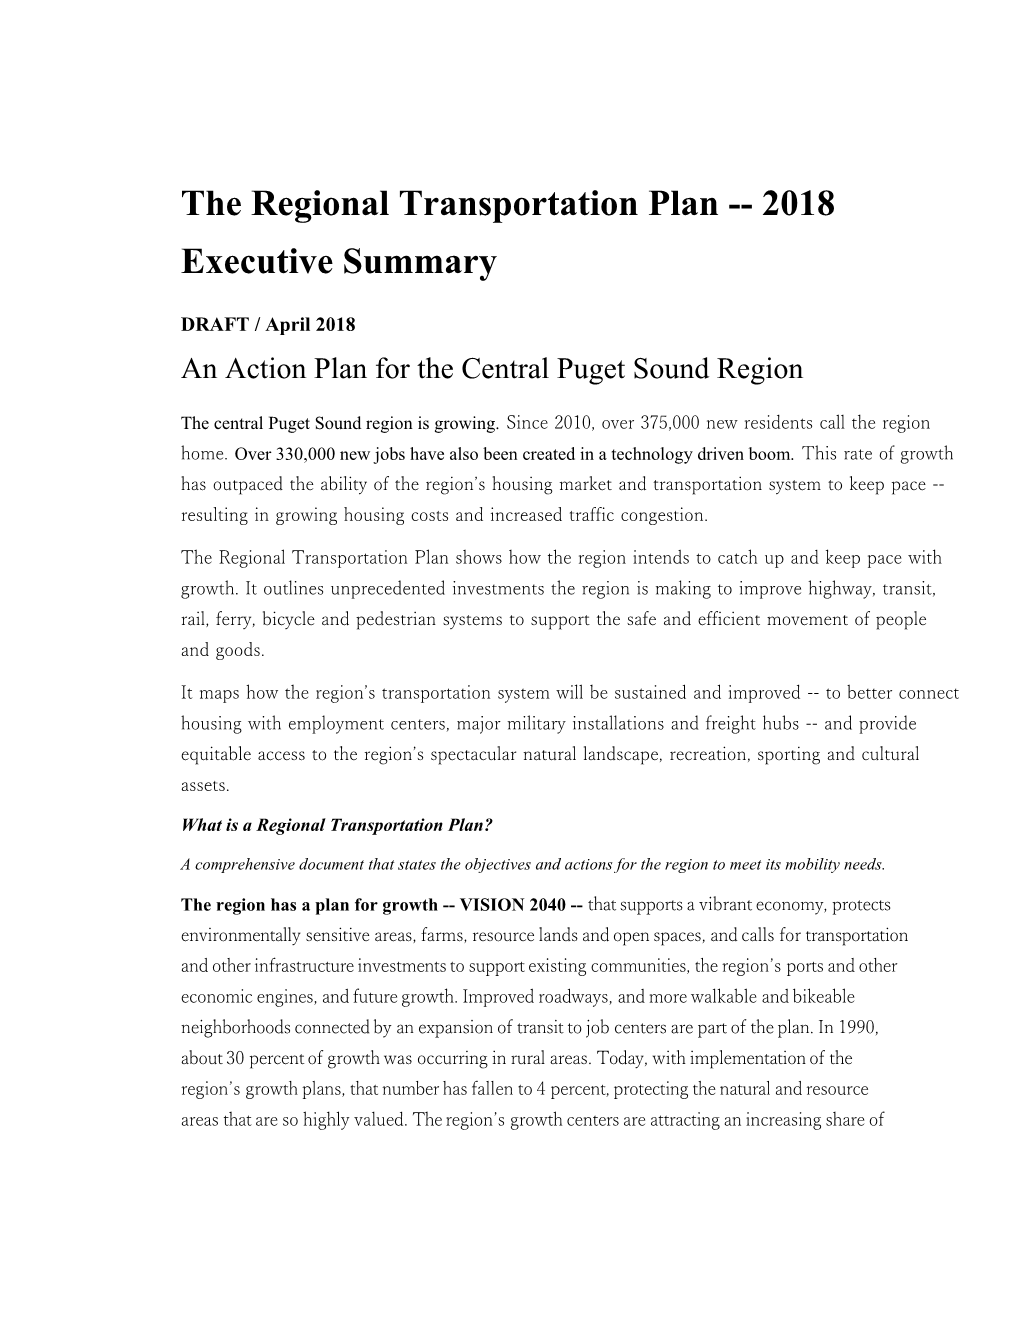 The Regional Transportation Plan 2018